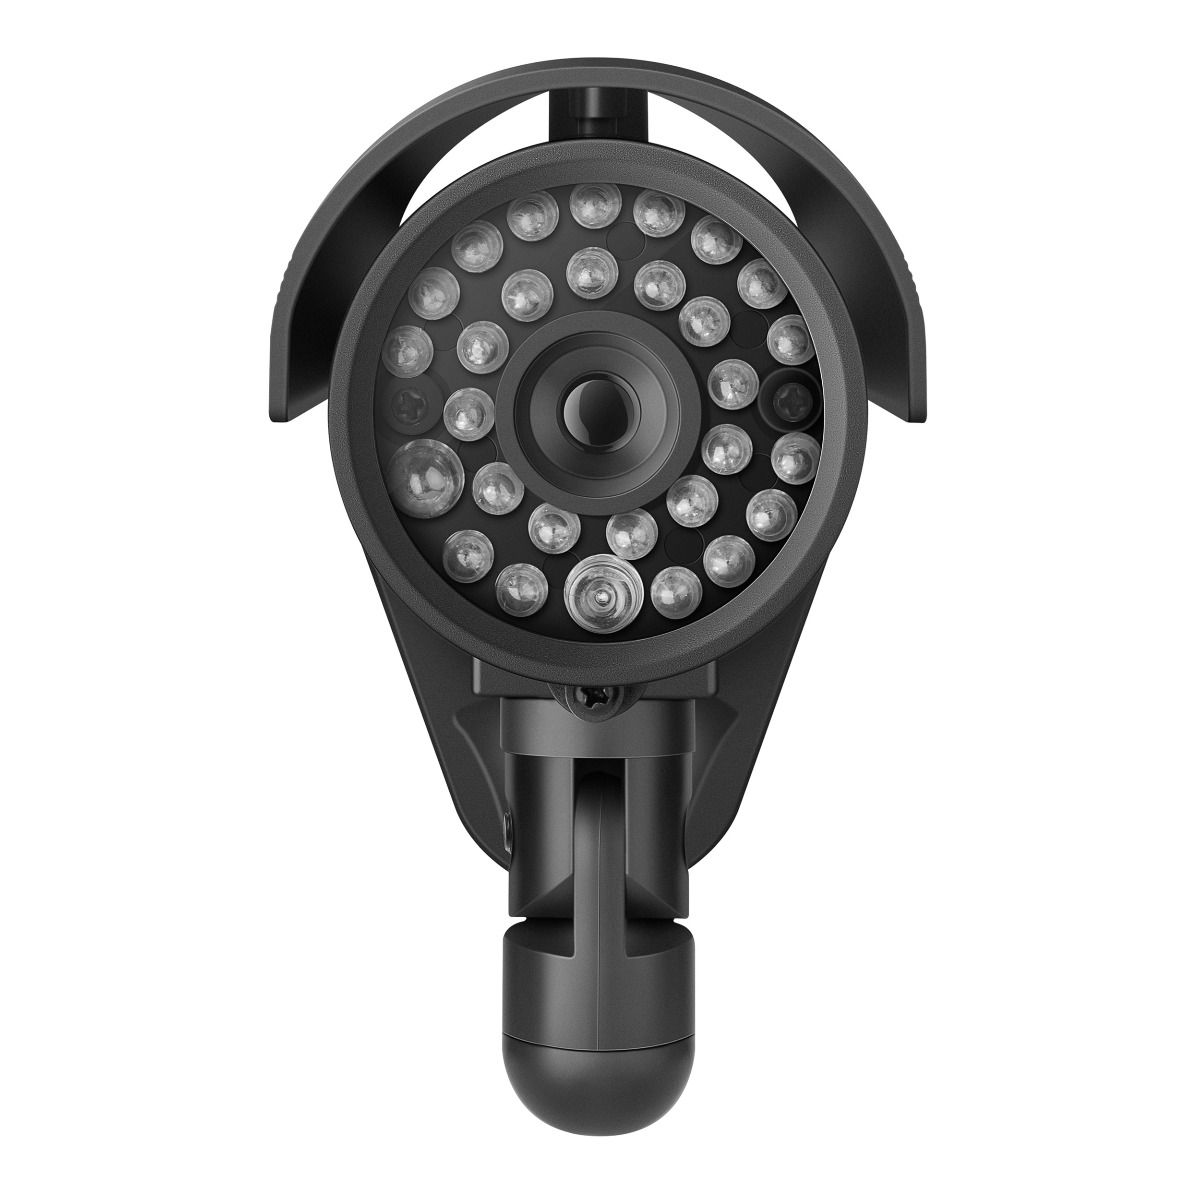 Reprimir Responder símbolo Cámara de seguridad CCTV simulada (dummy) tipo bala